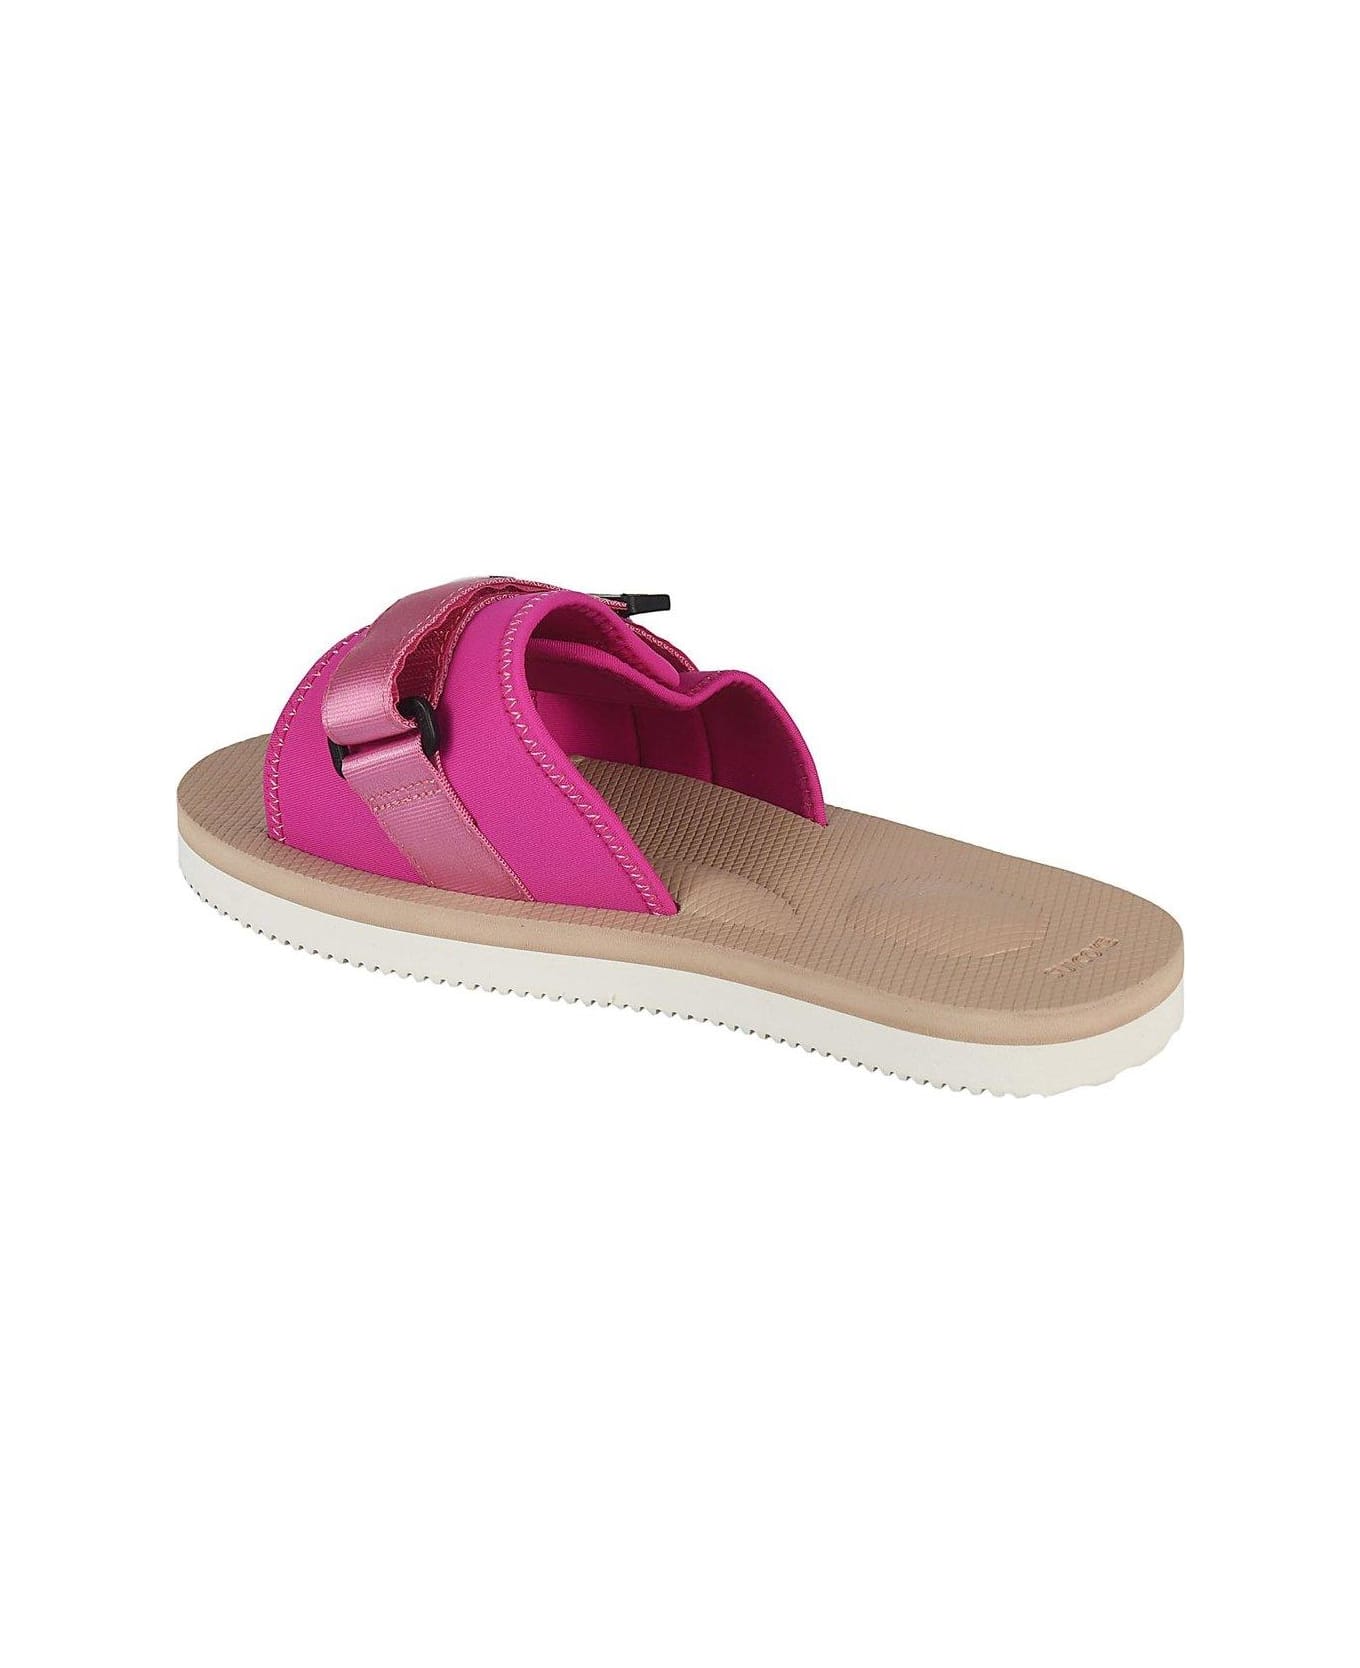 SUICOKE Padri Logo Patch Sandals - Rosa/beige フラットシューズ